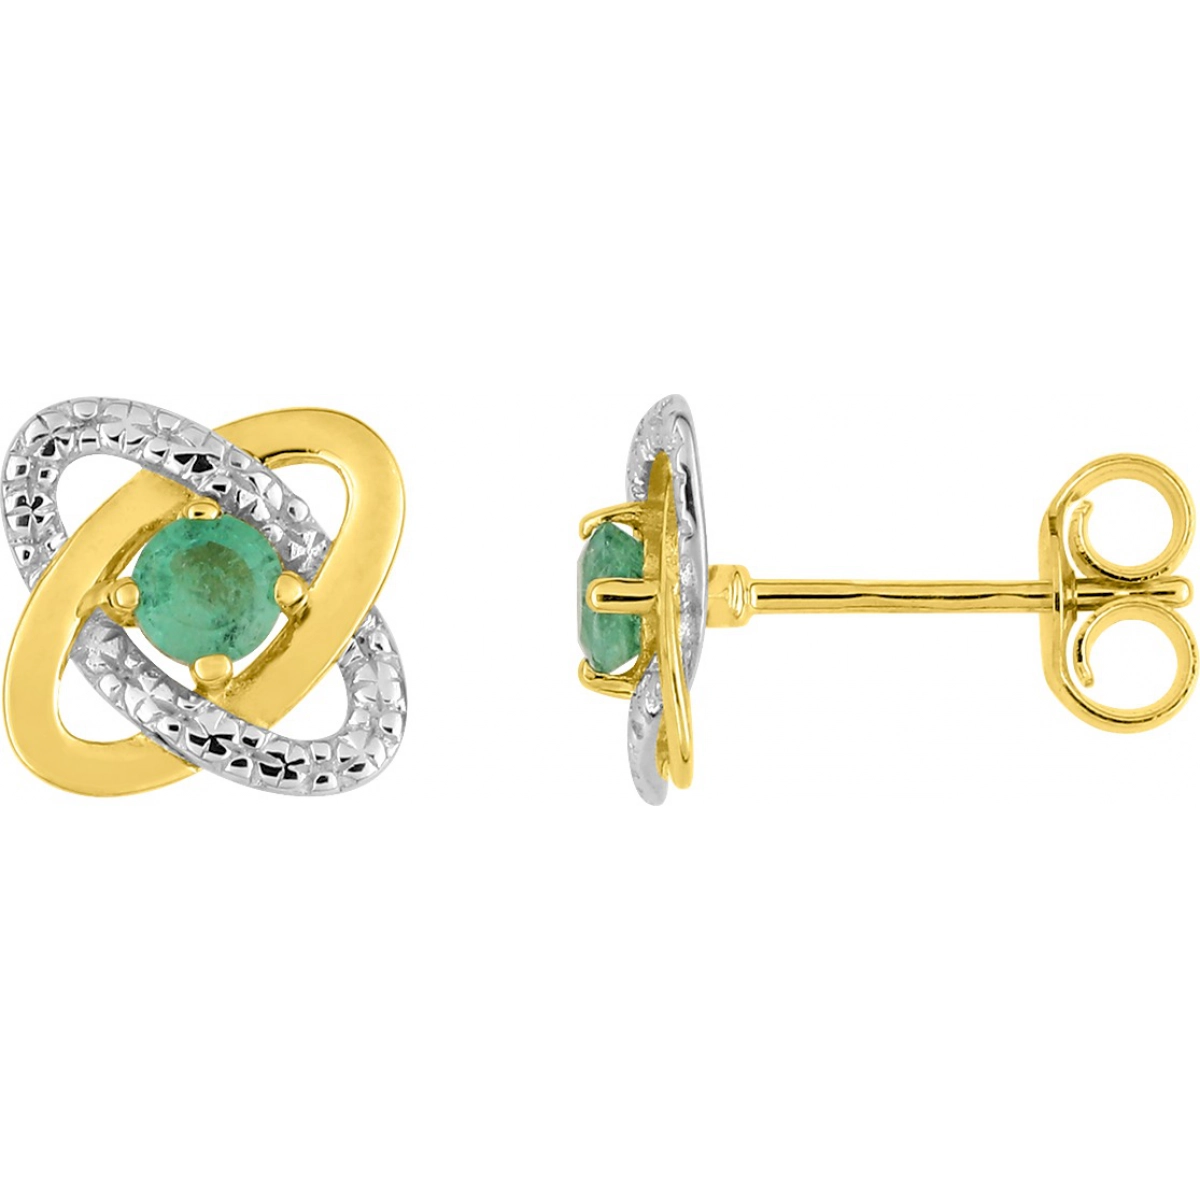 Earrings pair w. emerald rhod 9K YG  Lua Blanca  297133.E3.0